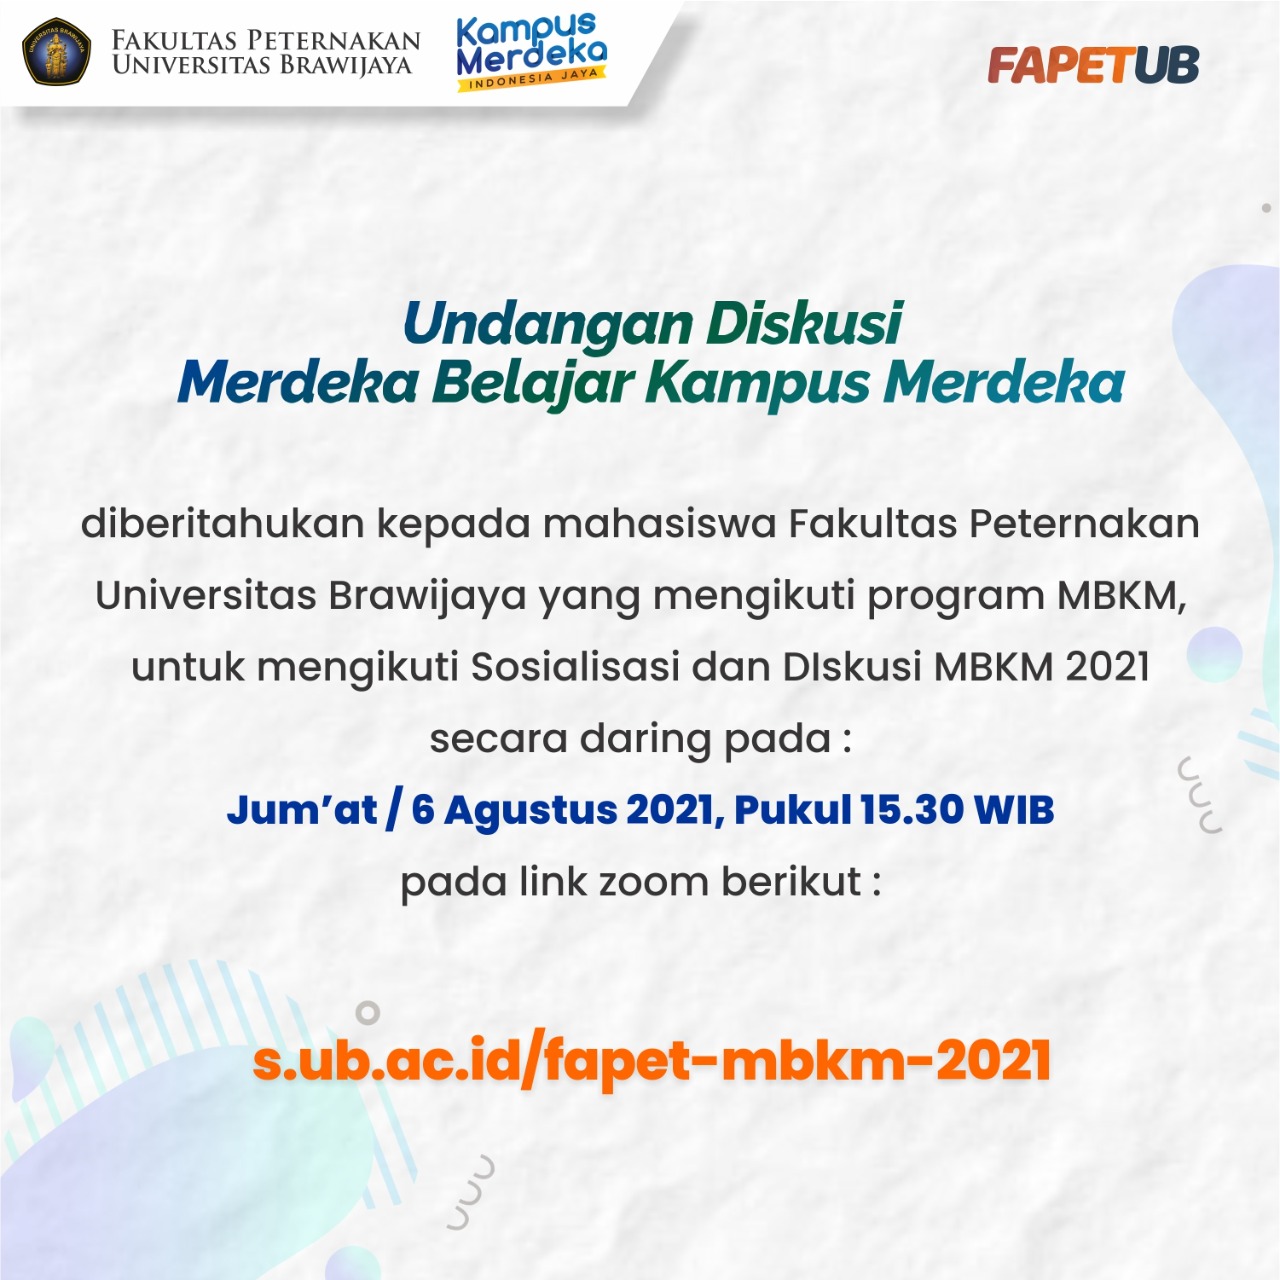 MBKM 2021 DISCUSSION INVITATION